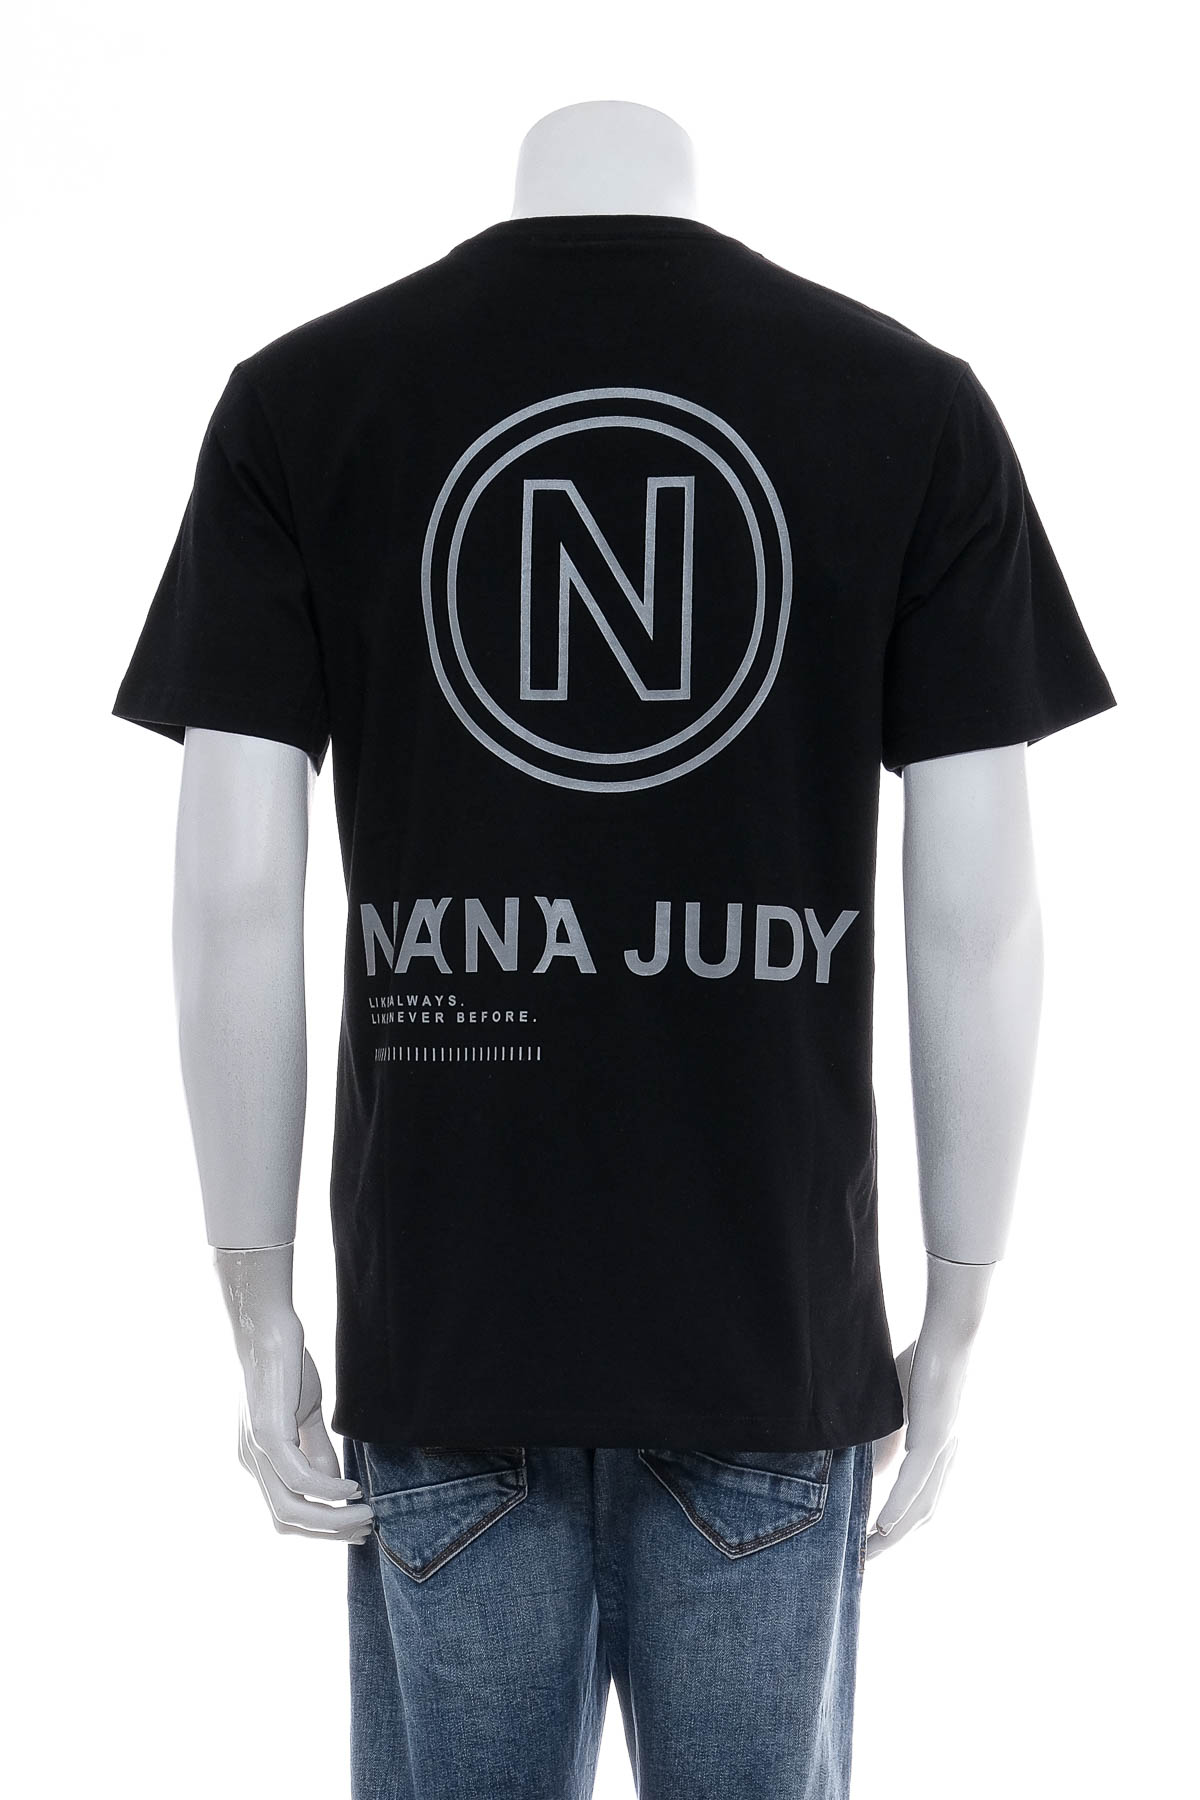 Ανδρικό μπλουζάκι - Nana Judy - 1